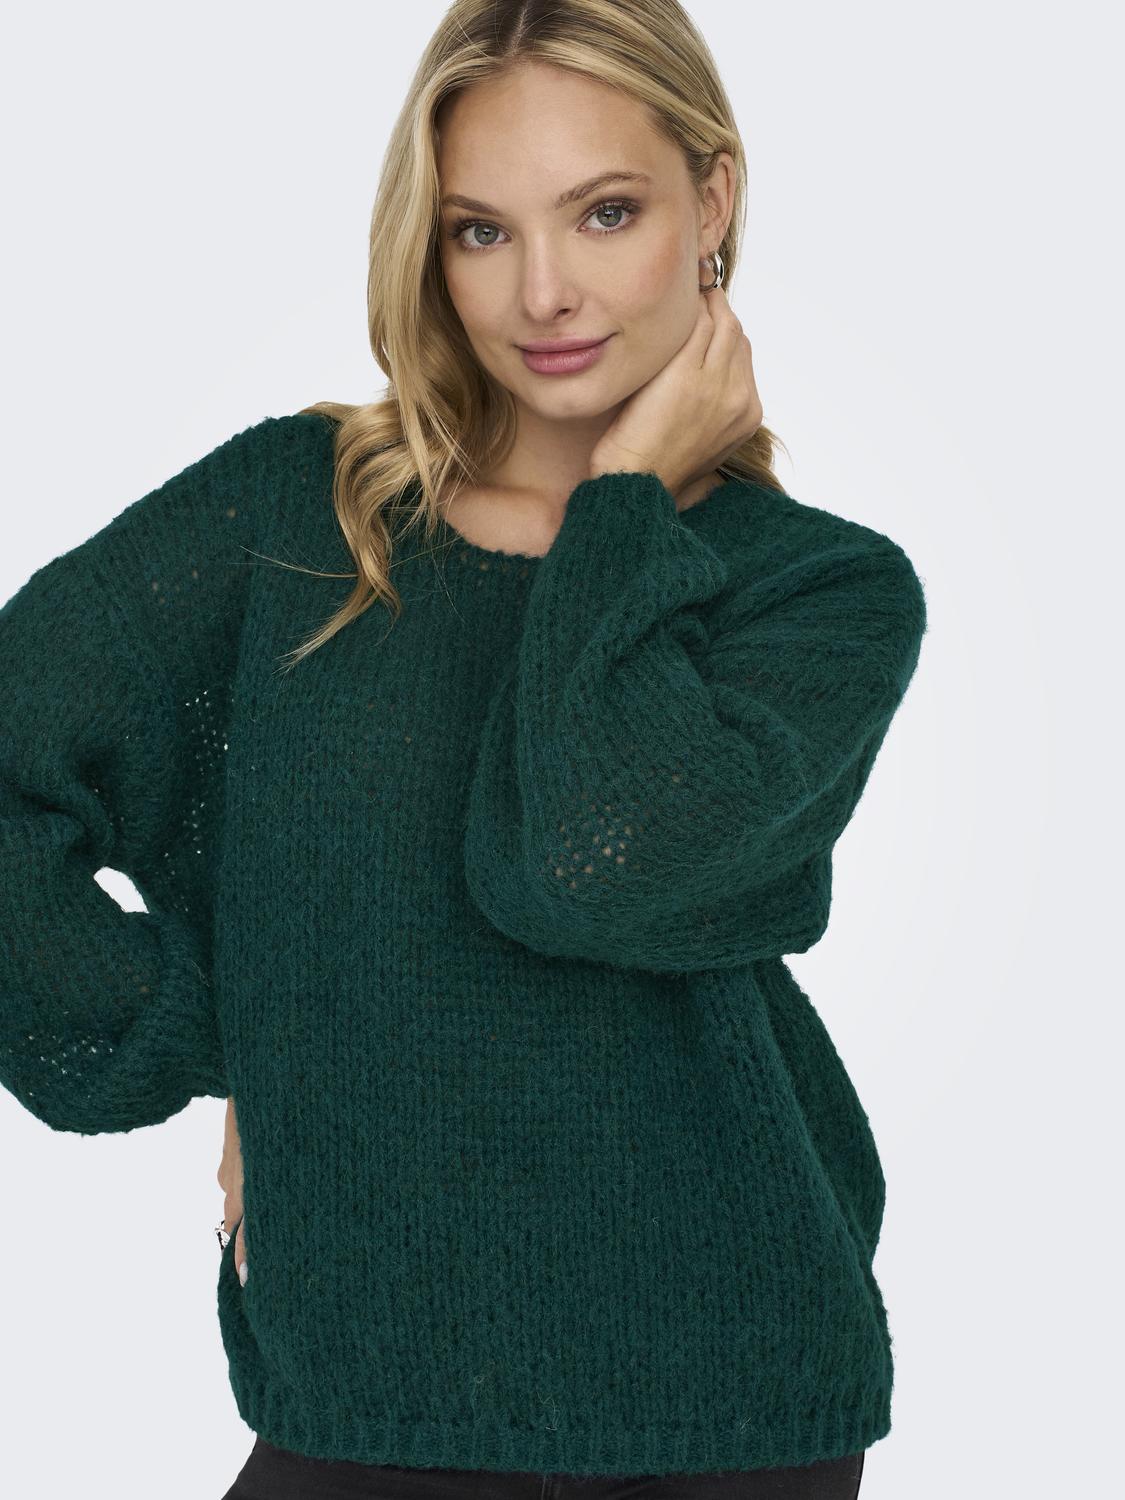 ONLNORDIC Pullover - Grønn